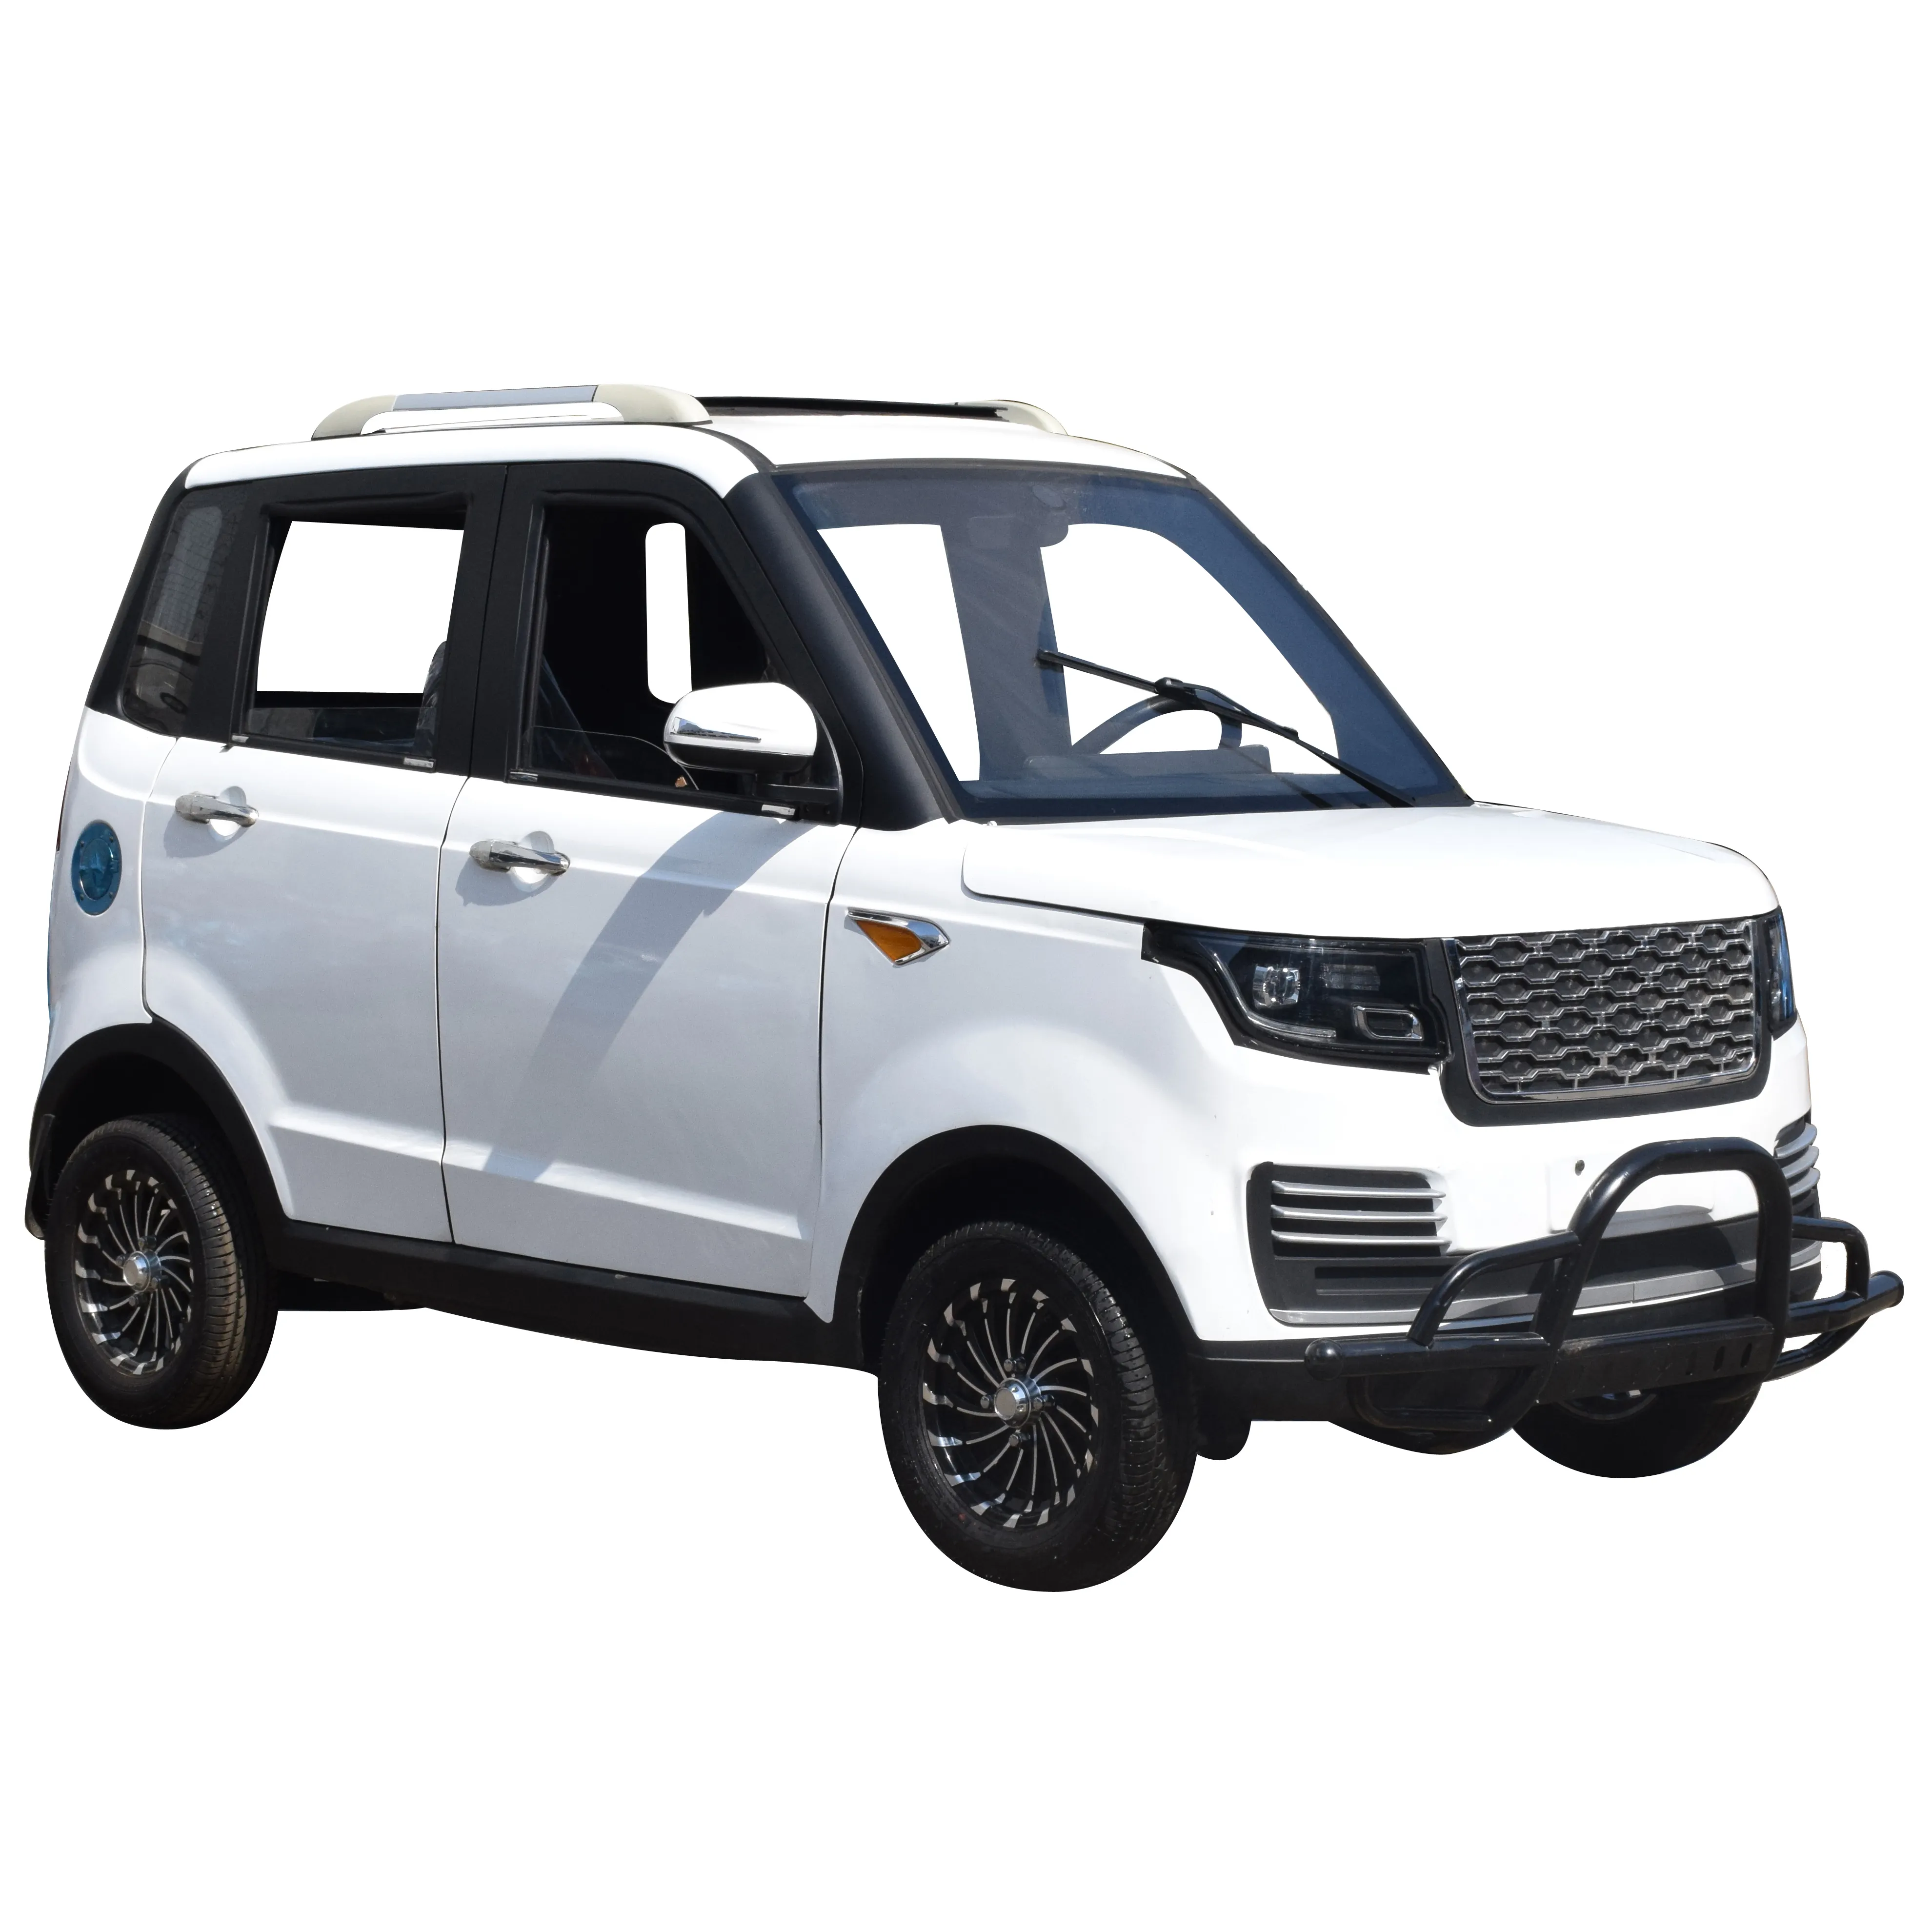 Chang li-coche eléctrico de China, vehículo eléctrico con aire acondicionado, nuevo